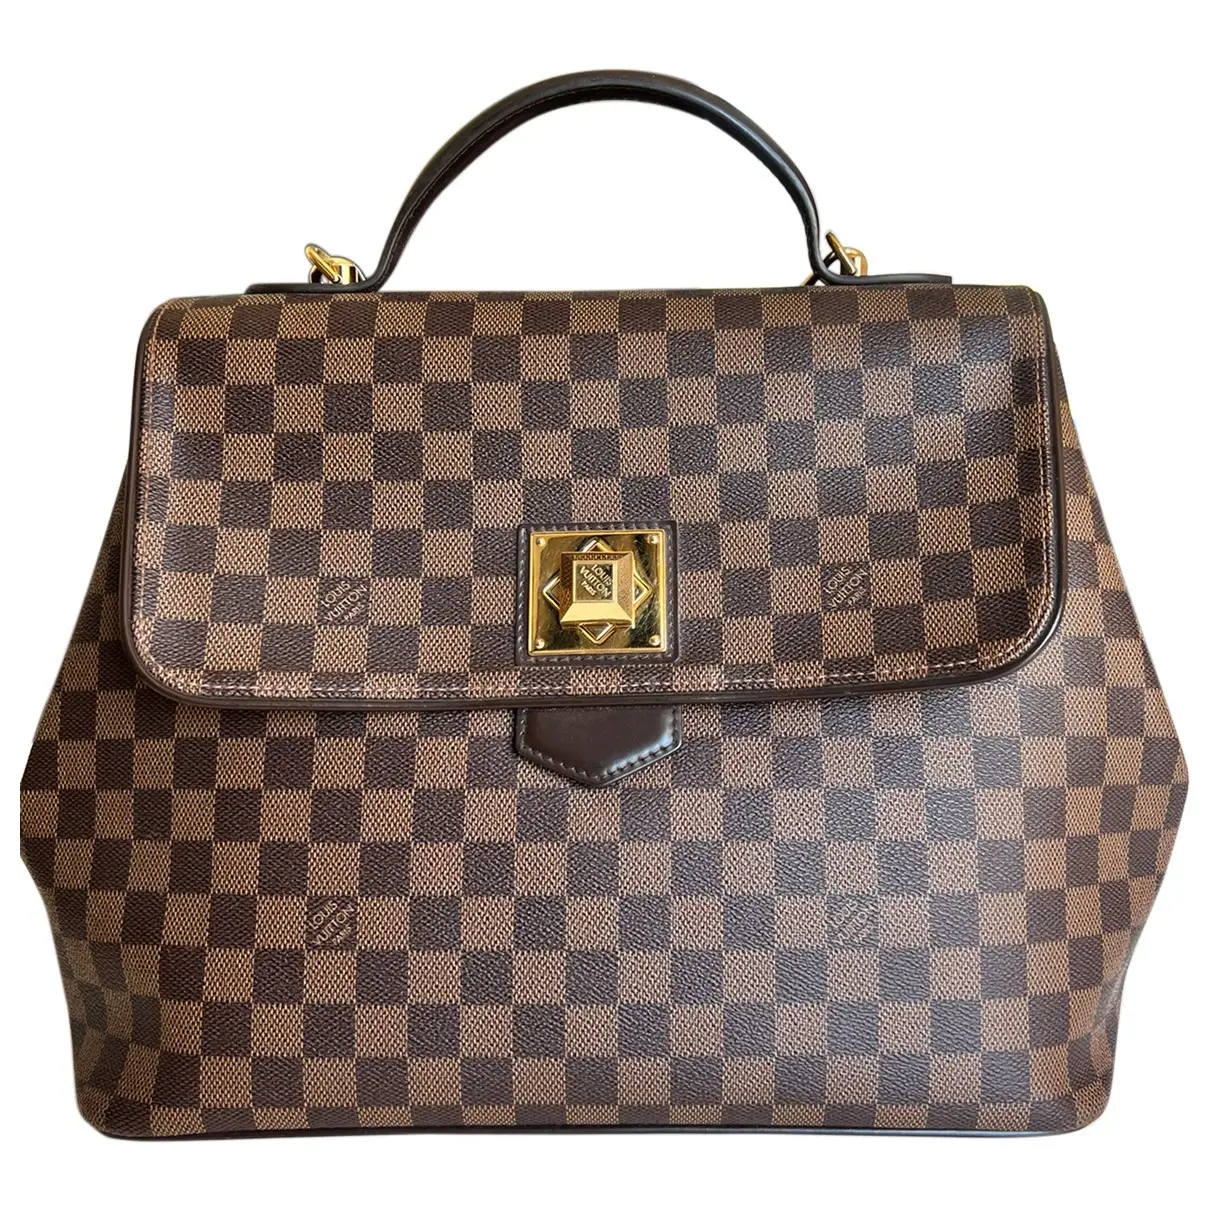 Bergamo cloth handbag Louis Vuitton